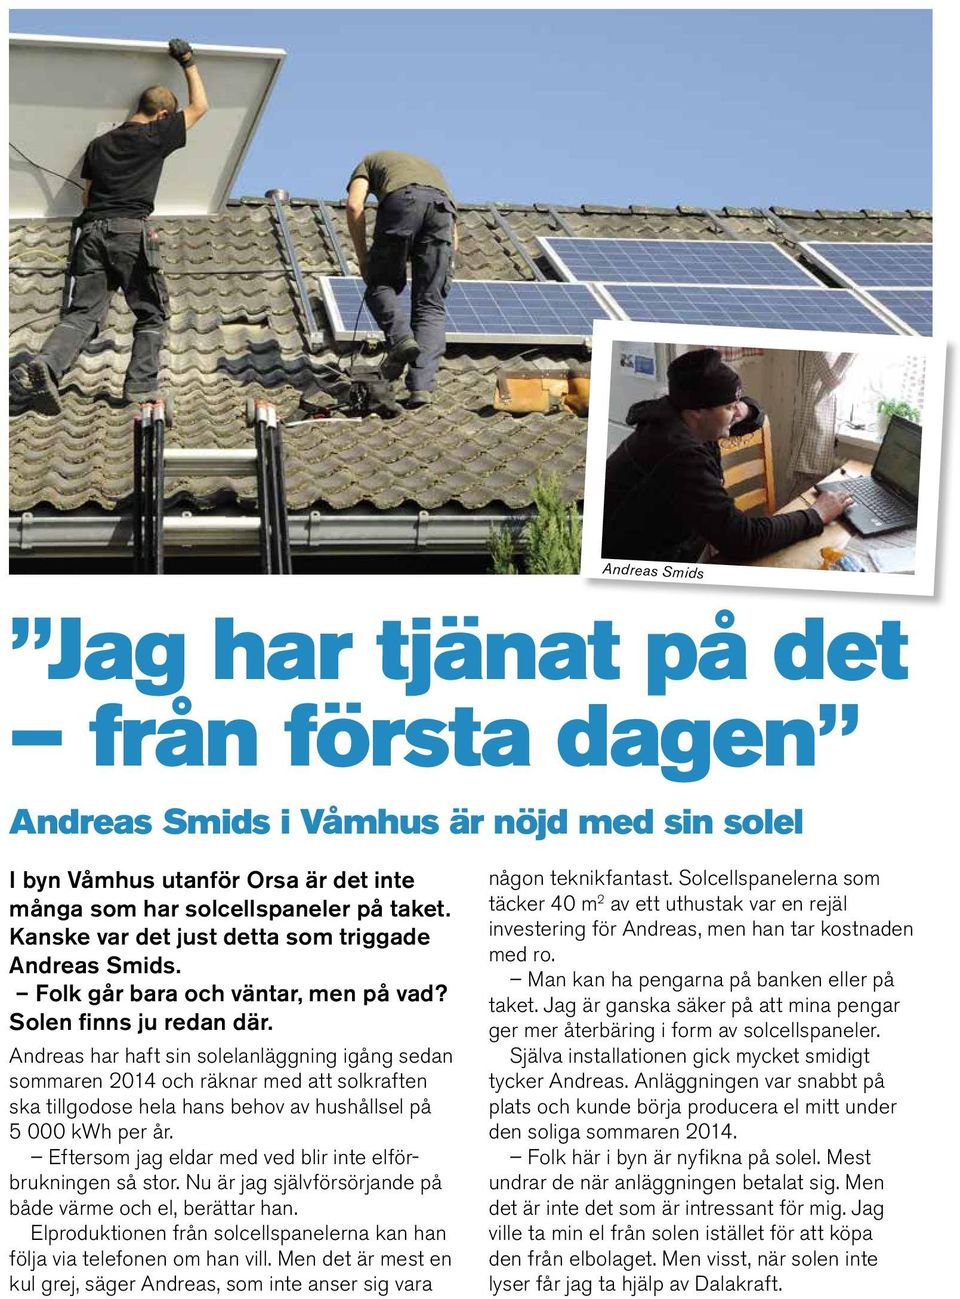 Andreas har haft sin solelanläggning igång sedan sommaren 2014 och räknar med att solkraften ska tillgodose hela hans behov av hushållsel på 5 000 kwh per år.